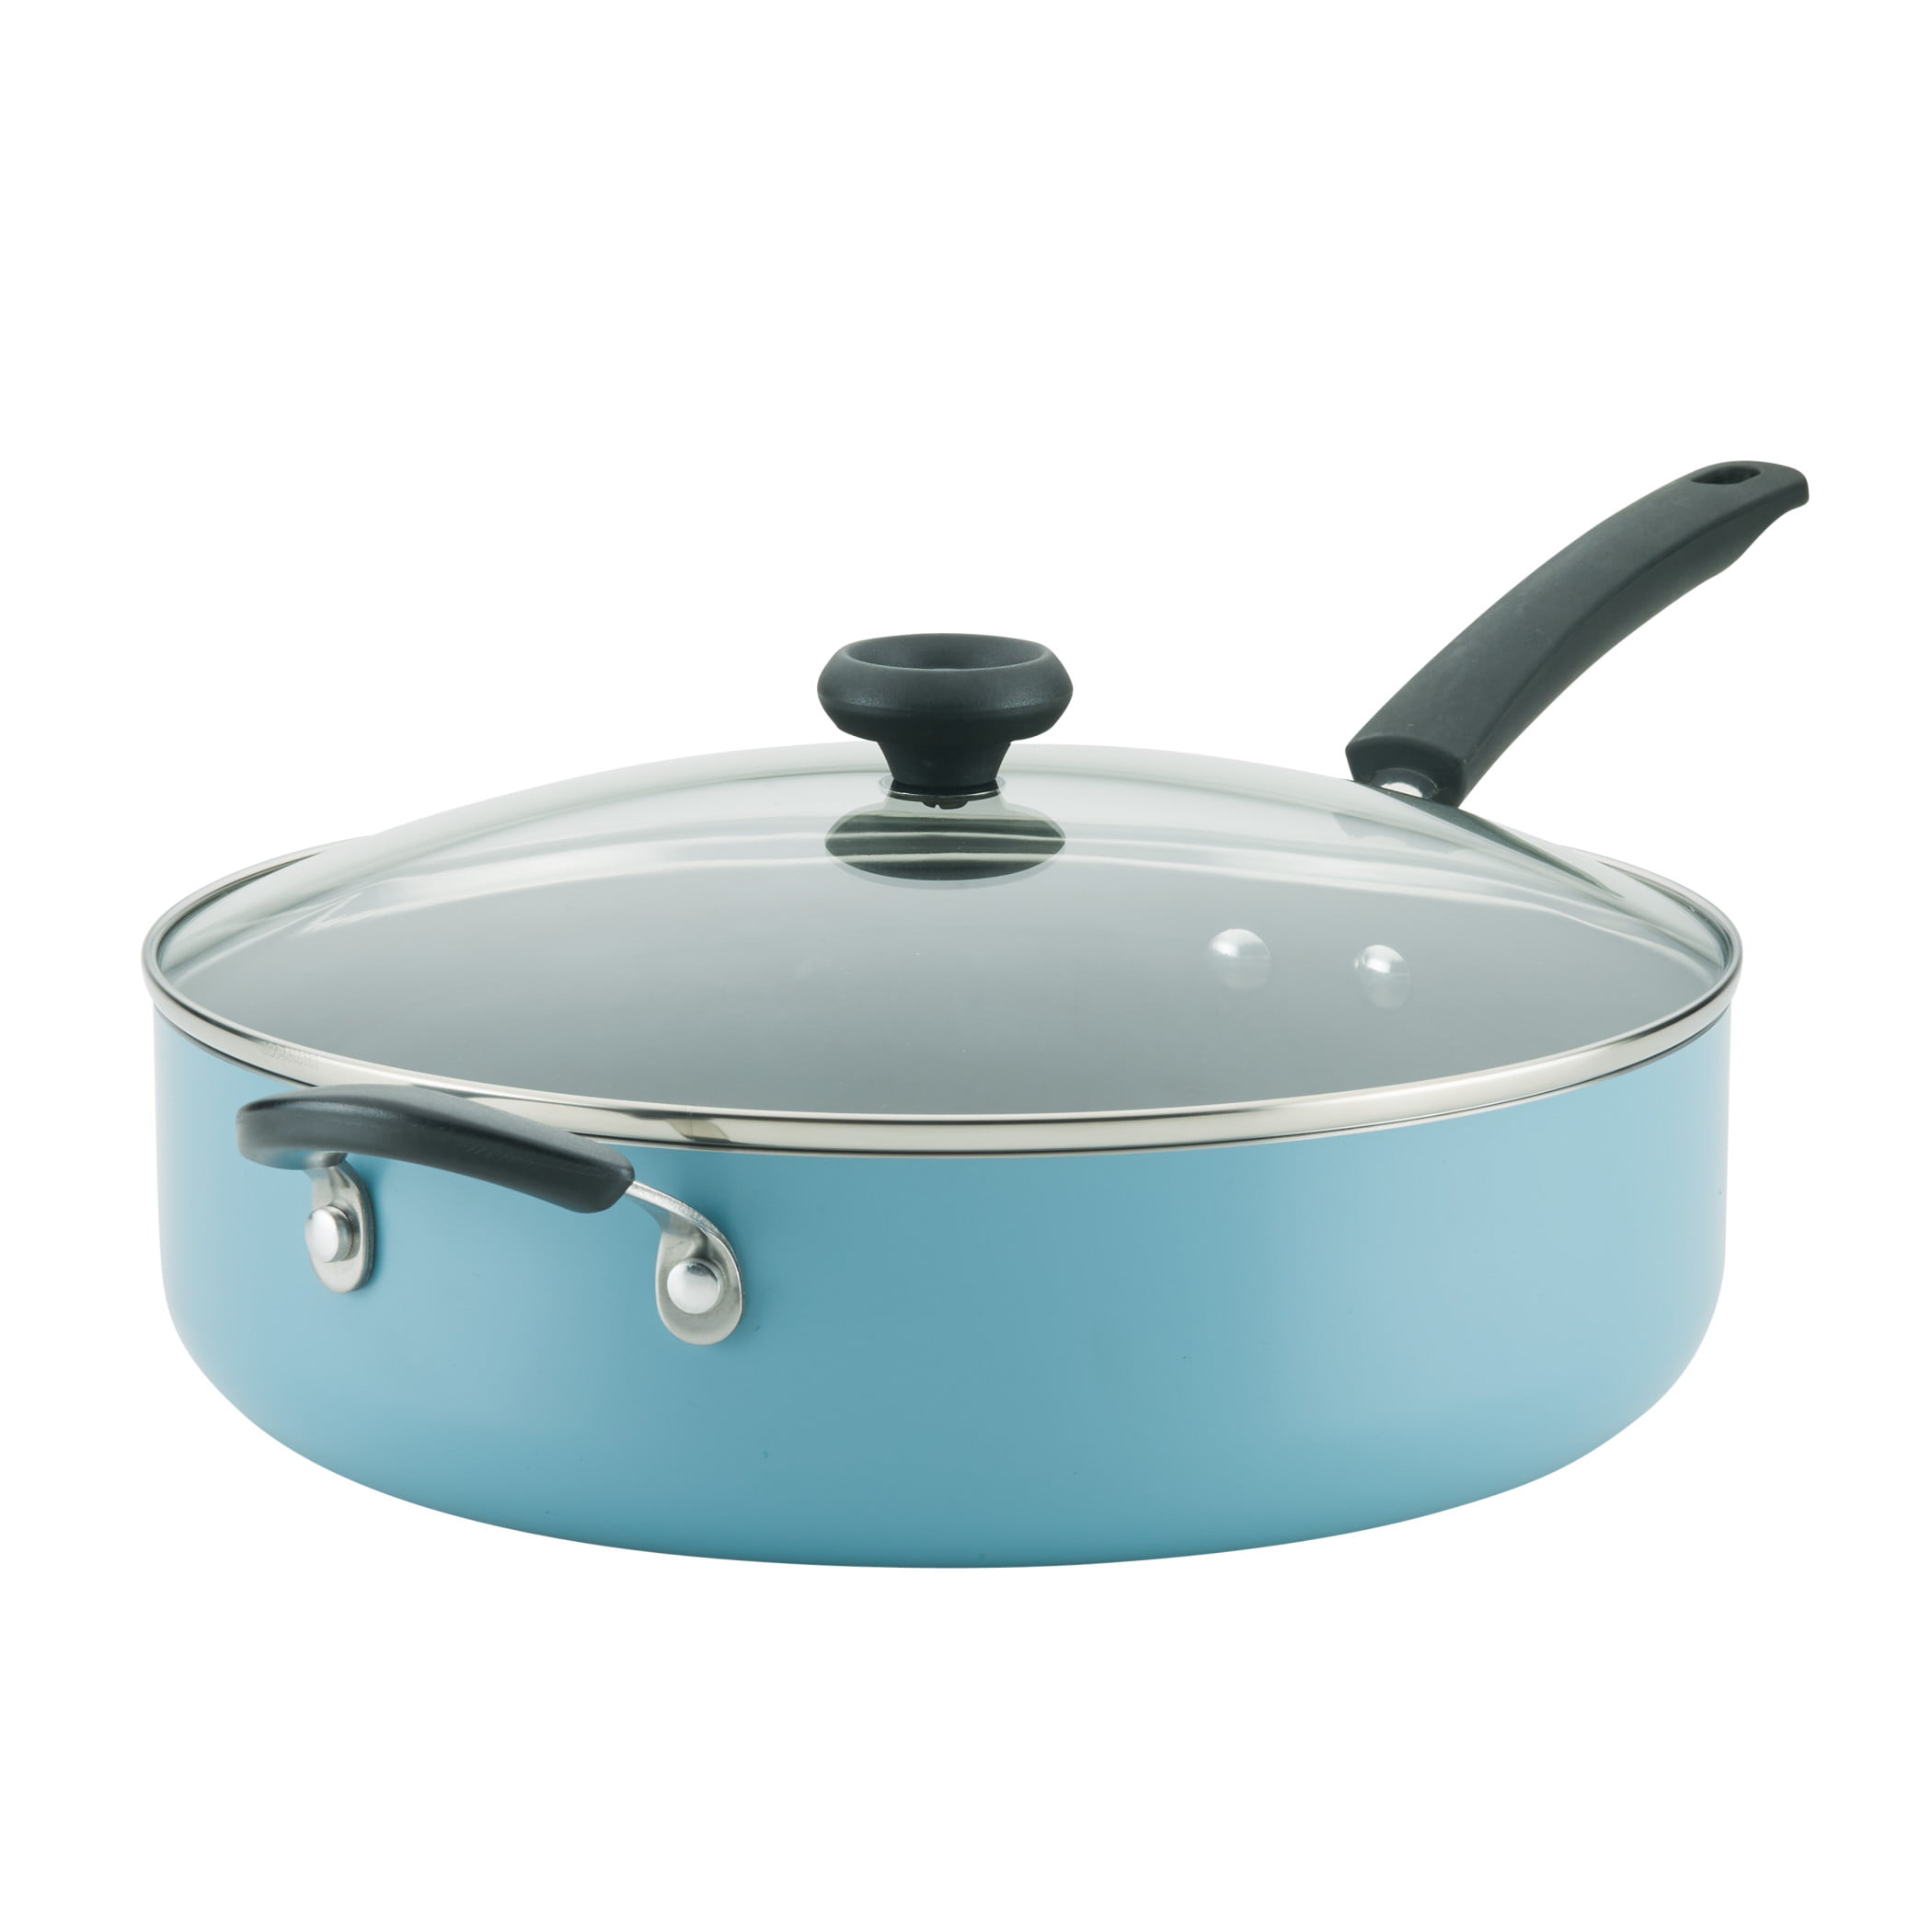 NEW Good Cook Smart Choice 9" Blue Saute Pan Item# 06127 EZ Clean Non Stick 